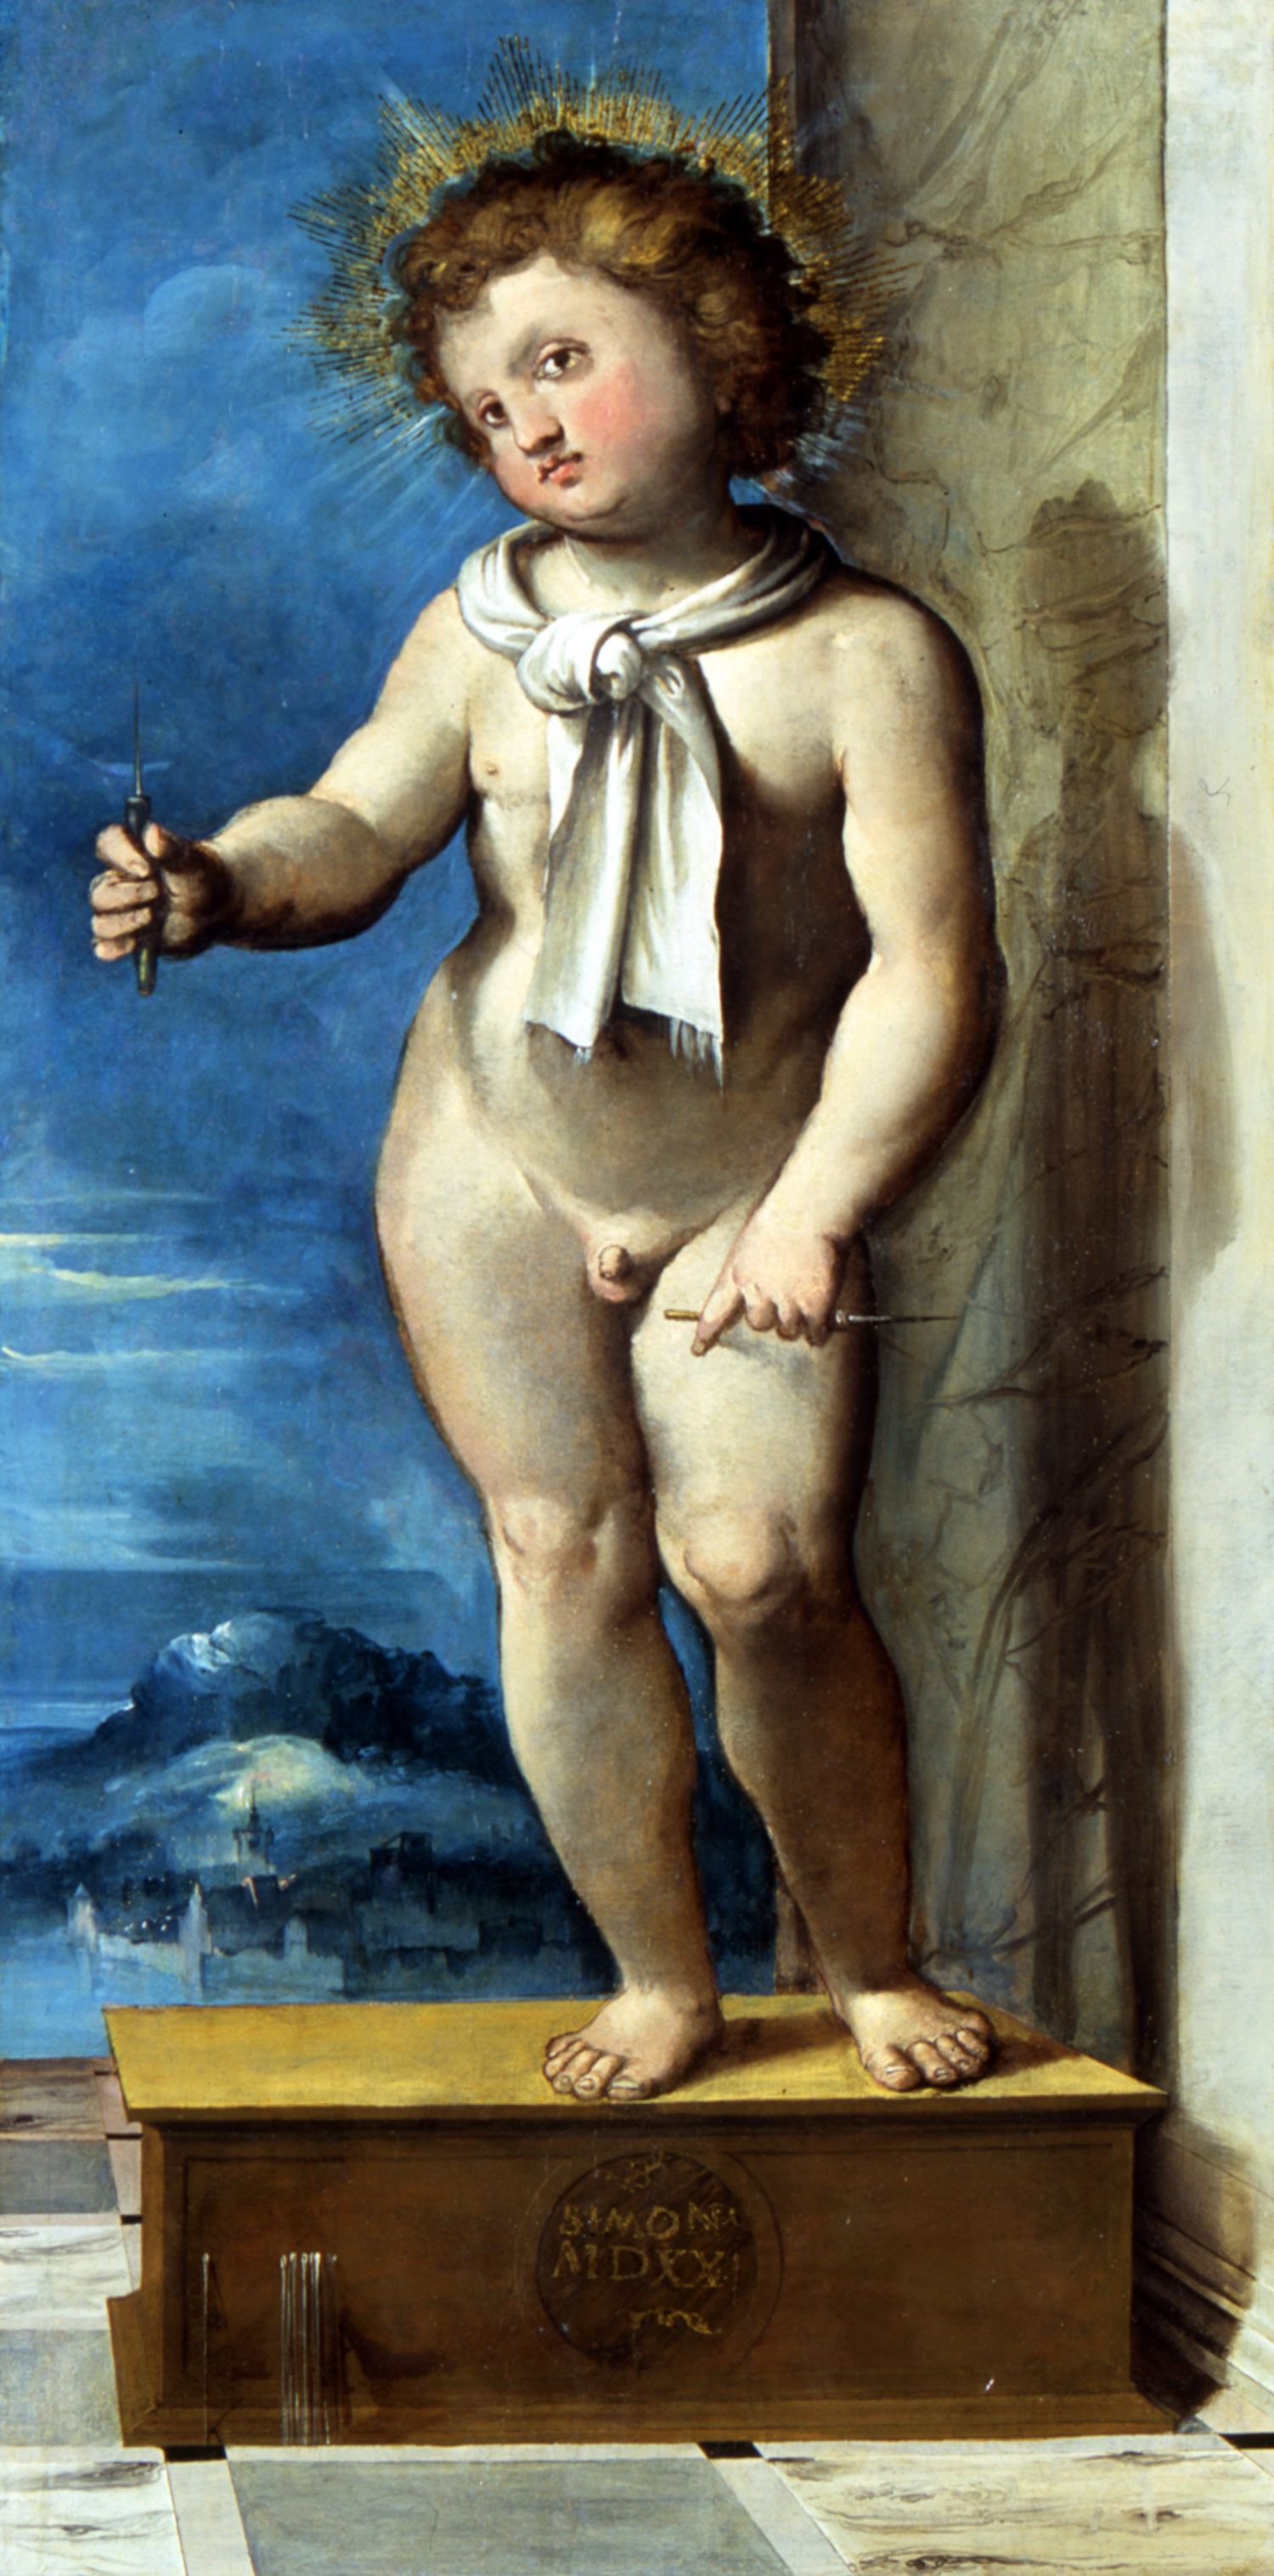 Altobello Melone, Simonino da Trento (1523; olio su tavola, 98 x 47 cm; Trento, Castello del Buonconsiglio, inv. MN 1381) 
